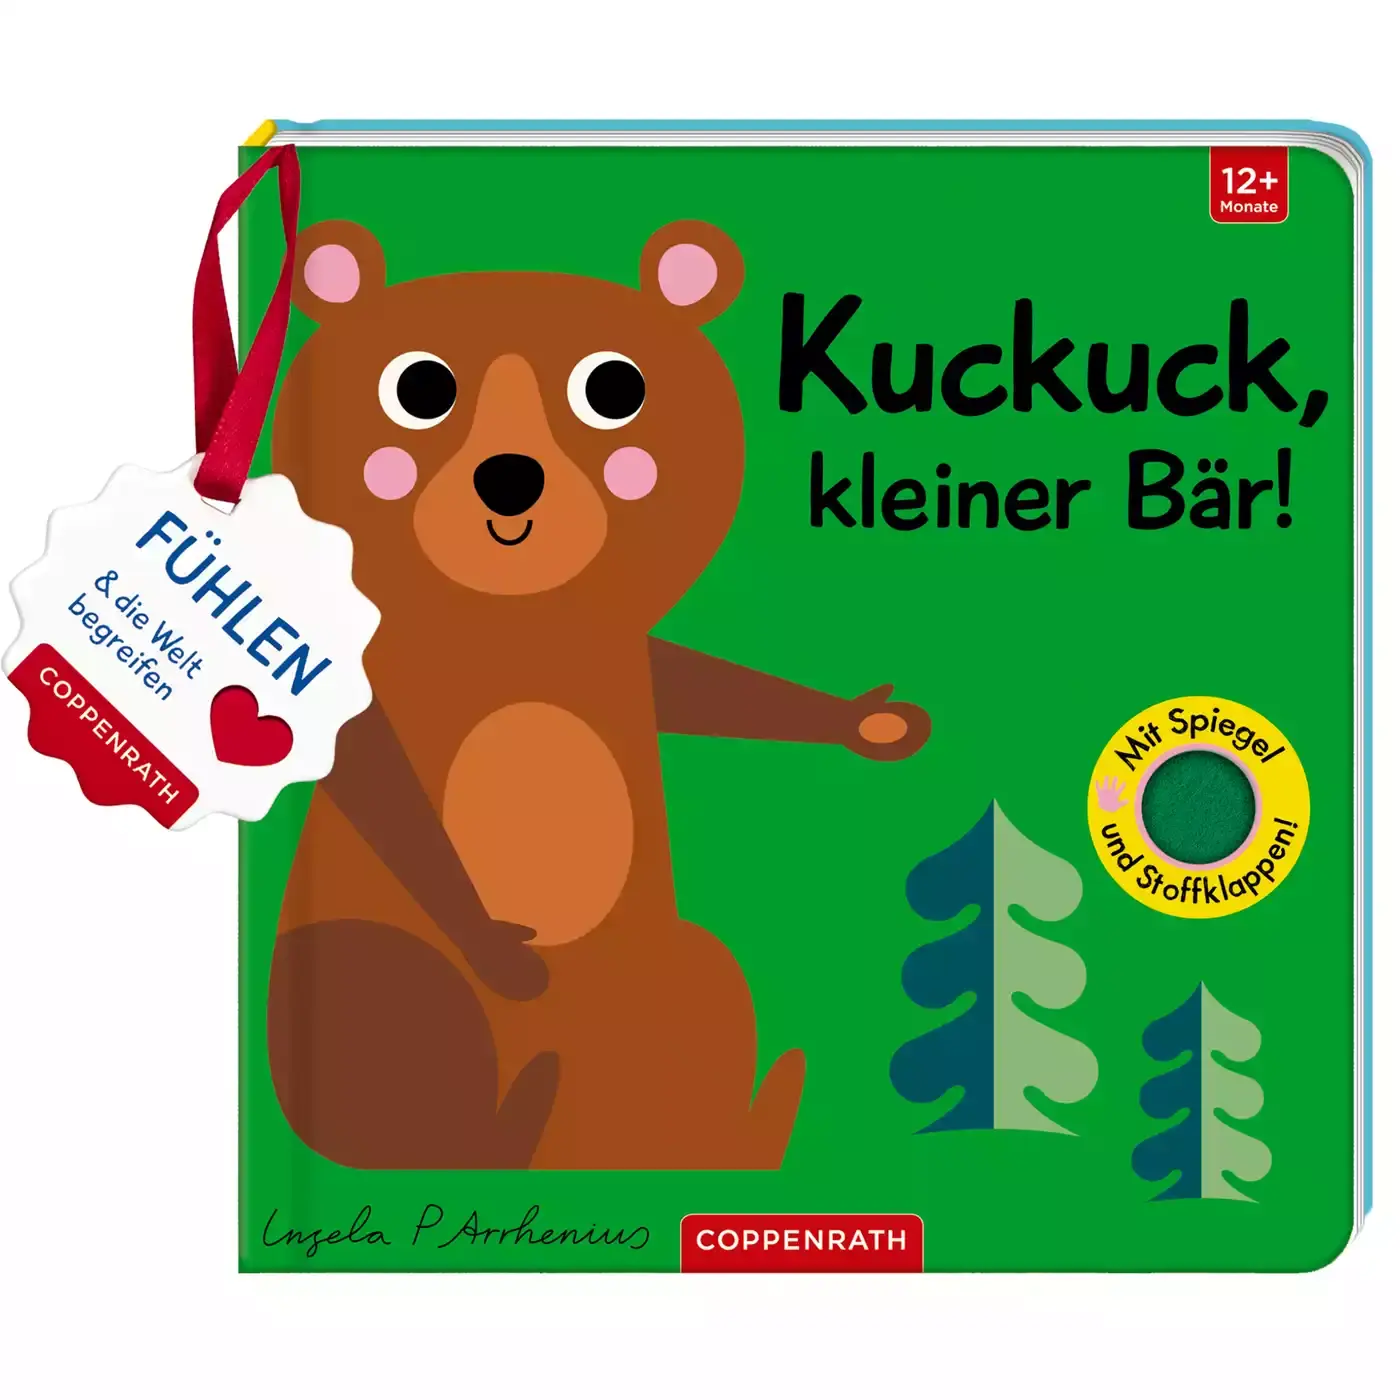 Kuckuck, kleiner Bär! COPPENRATH 2000577834006 1